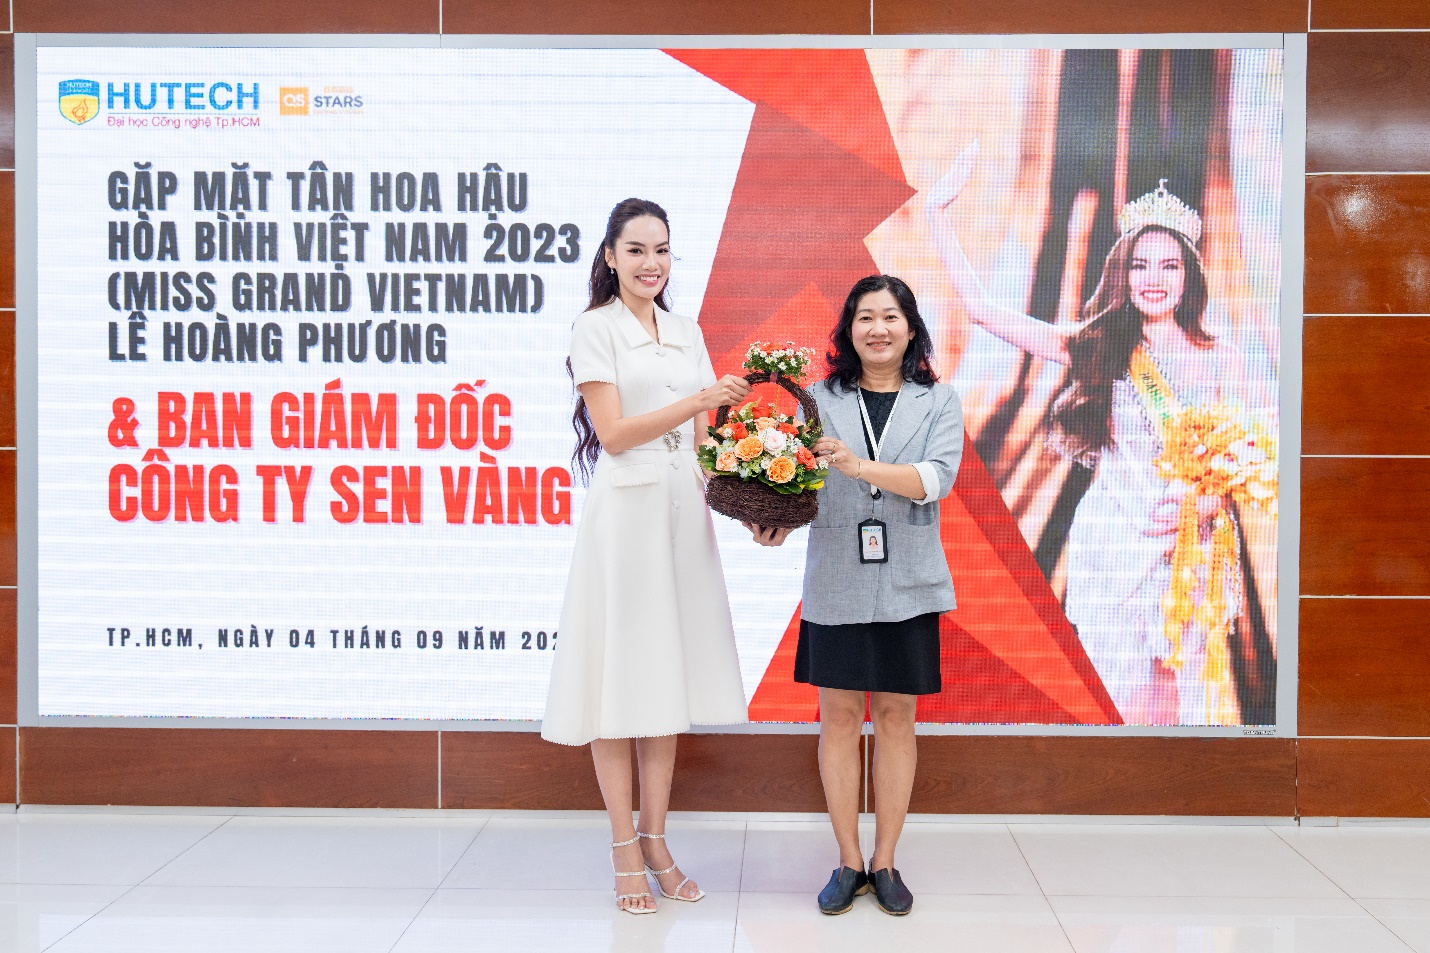 Hoa hậu Lê Hoàng Phương rạng rỡ về HUTECH học MBA, nhận học bổng 100% học phí - Ảnh 4.